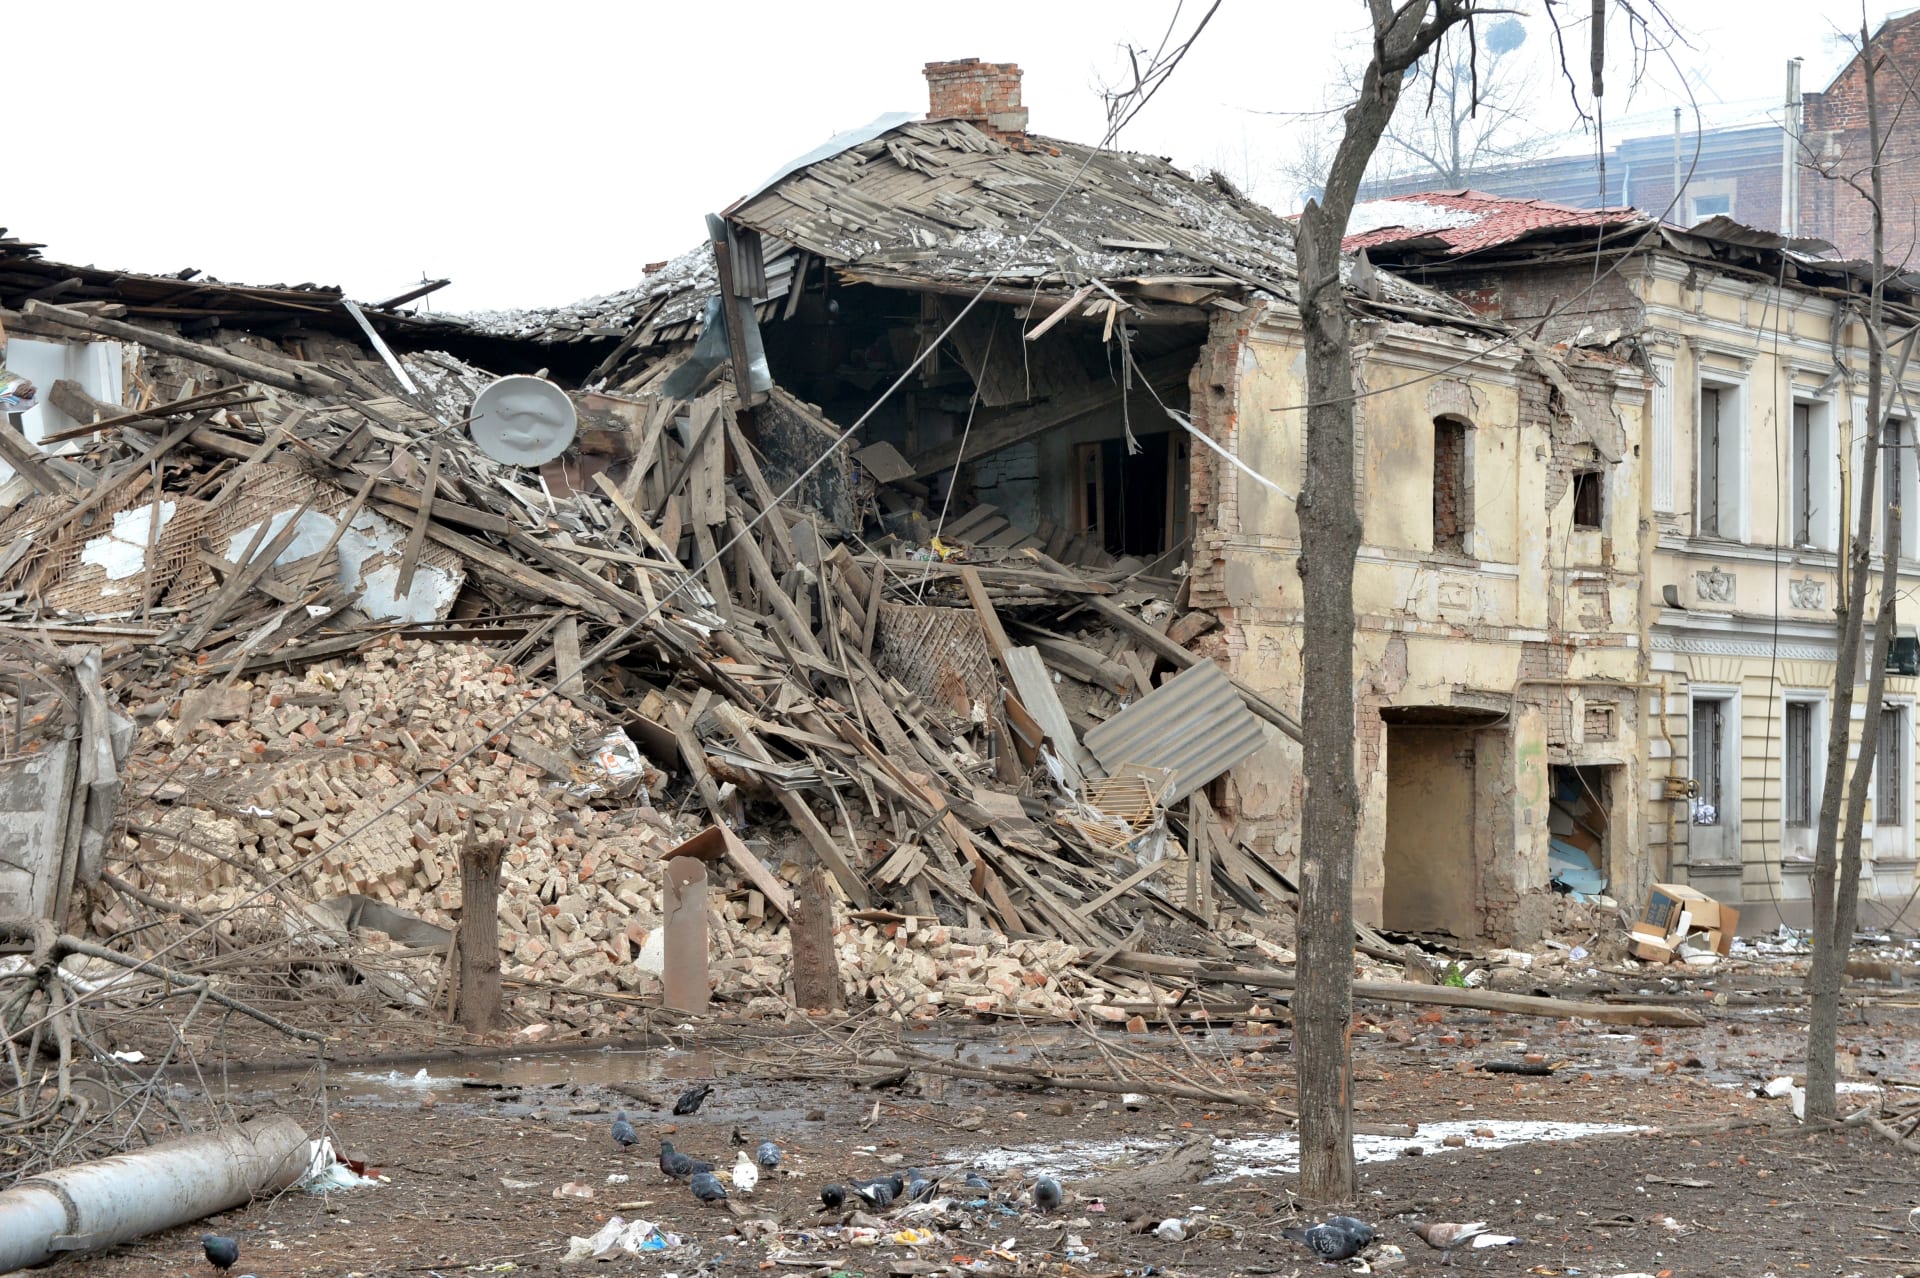  أحد المنازل المدمرة في خاركيف